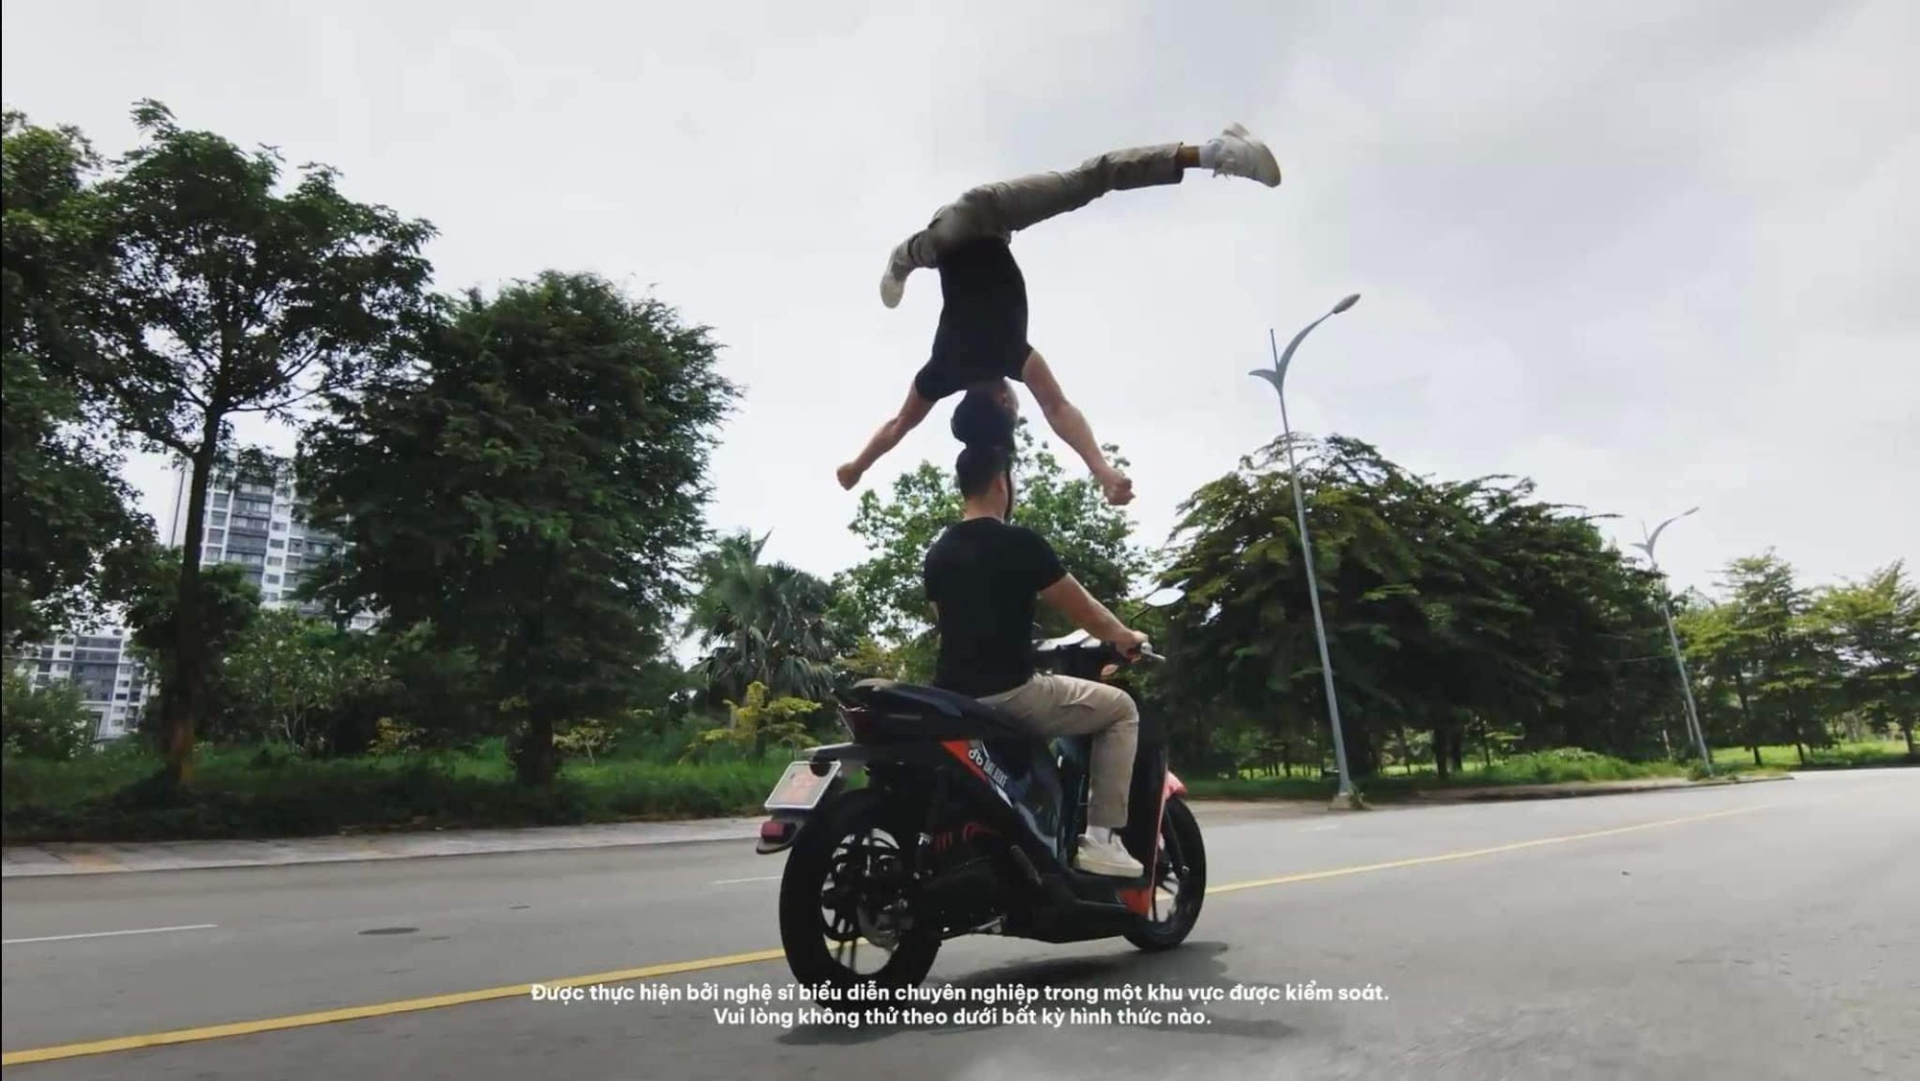 Phía Quốc Cơ và Quốc Nghiệp nói gì về hình ảnh không đội mũ bảo hiểm, 'làm xiếc' trên xe máy? - ảnh 3